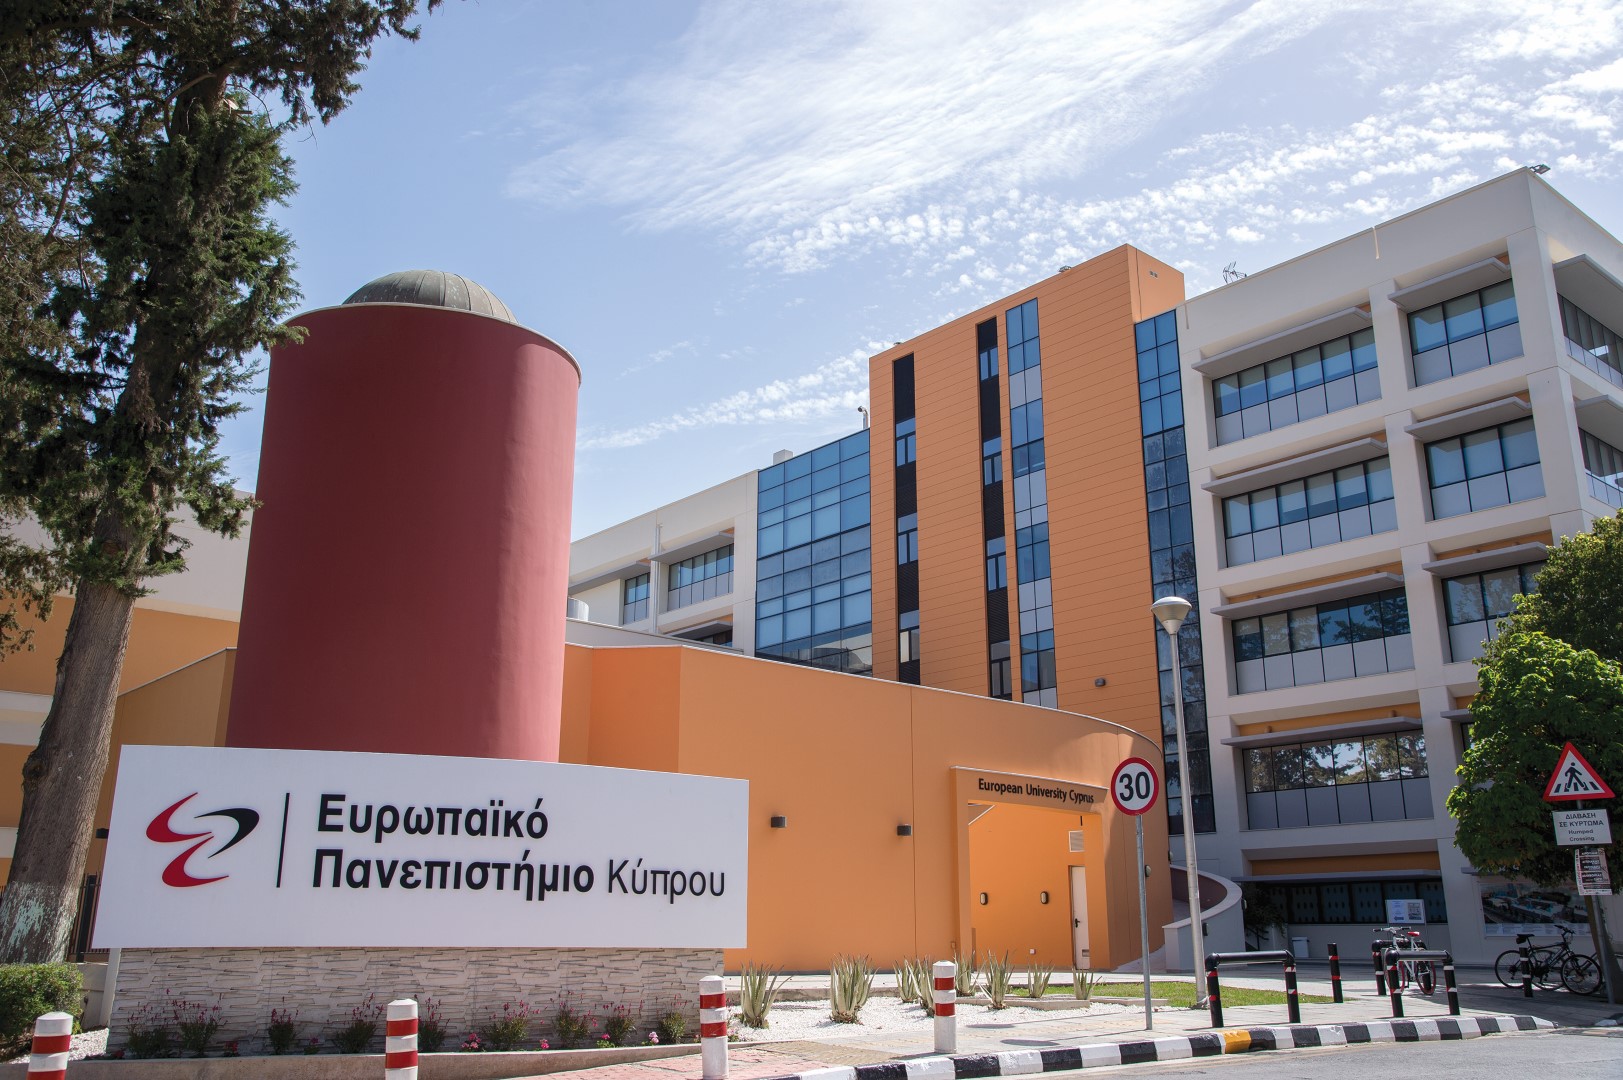 Το Ευρωπαϊκό Πανεπιστήμιο Κύπρου πλήρες μέλος του European University Association